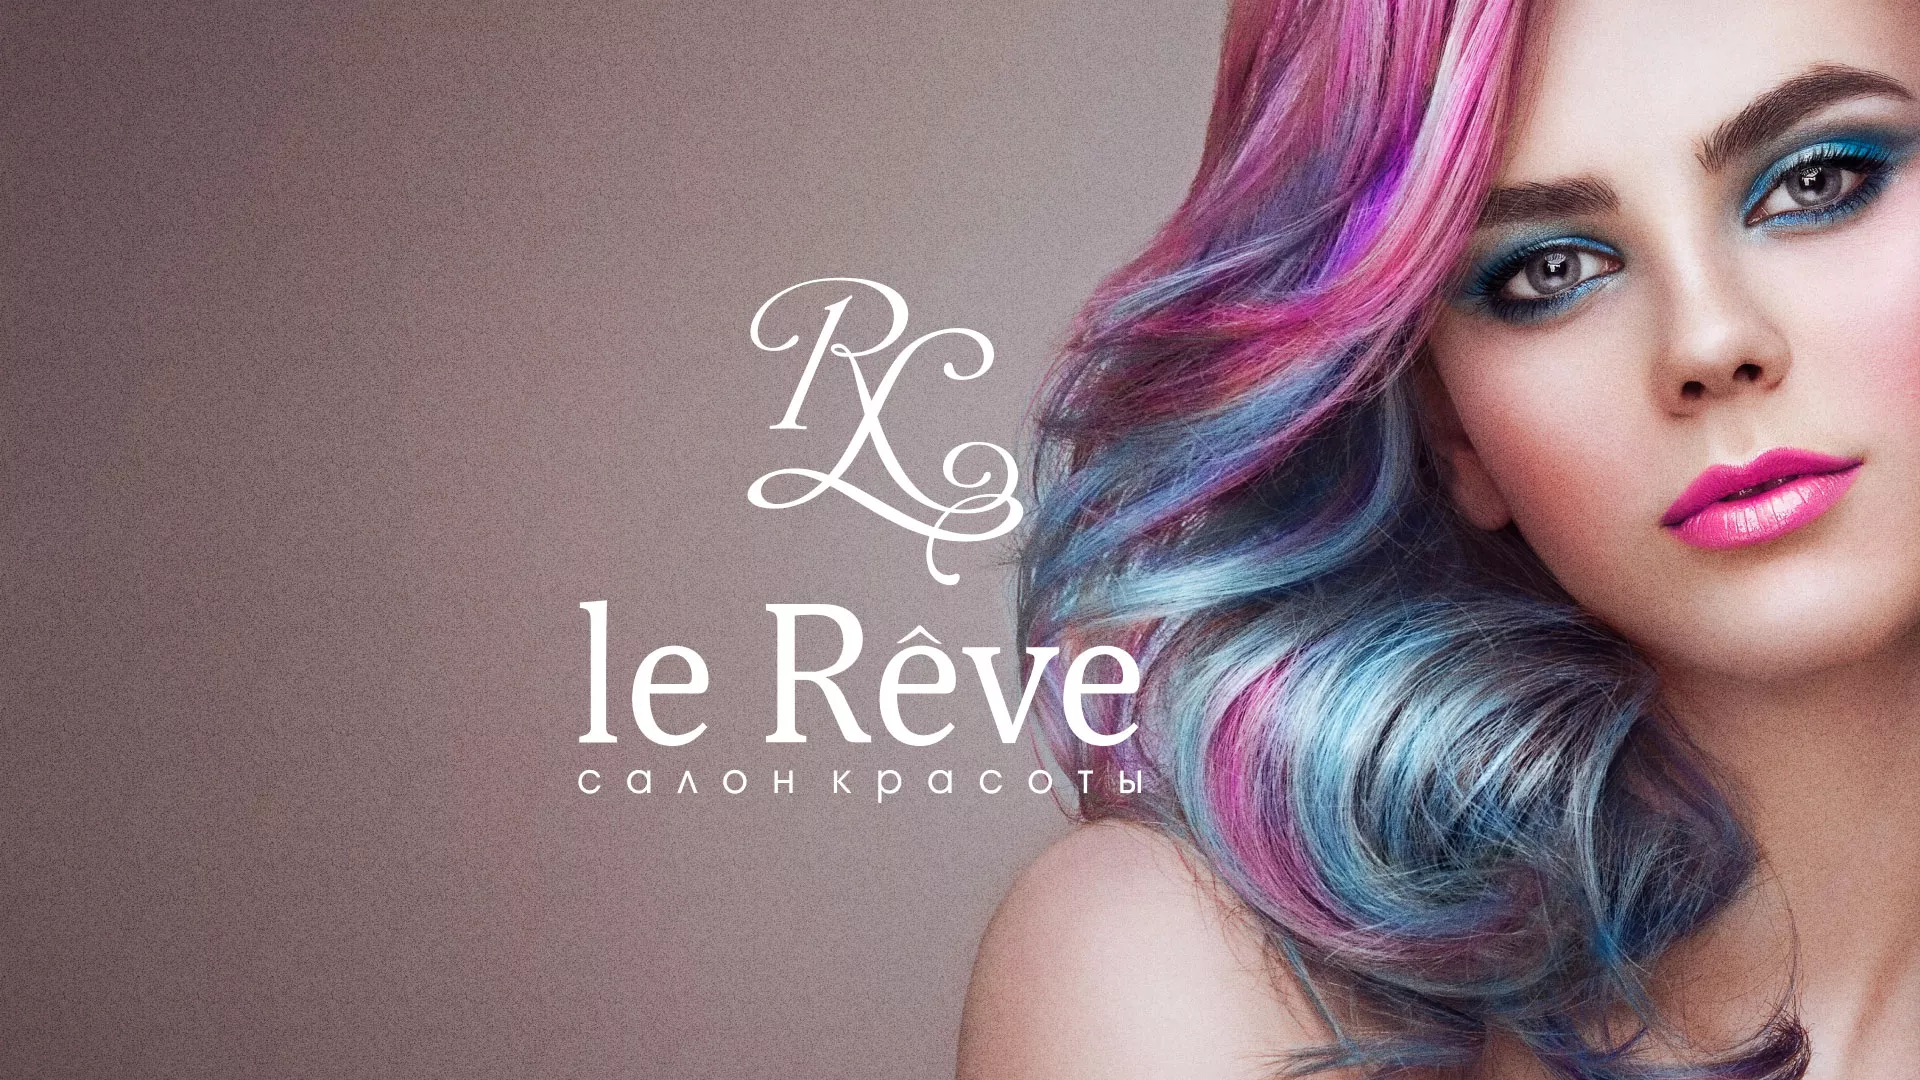 Создание сайта для салона красоты «Le Reve» в Симферополе